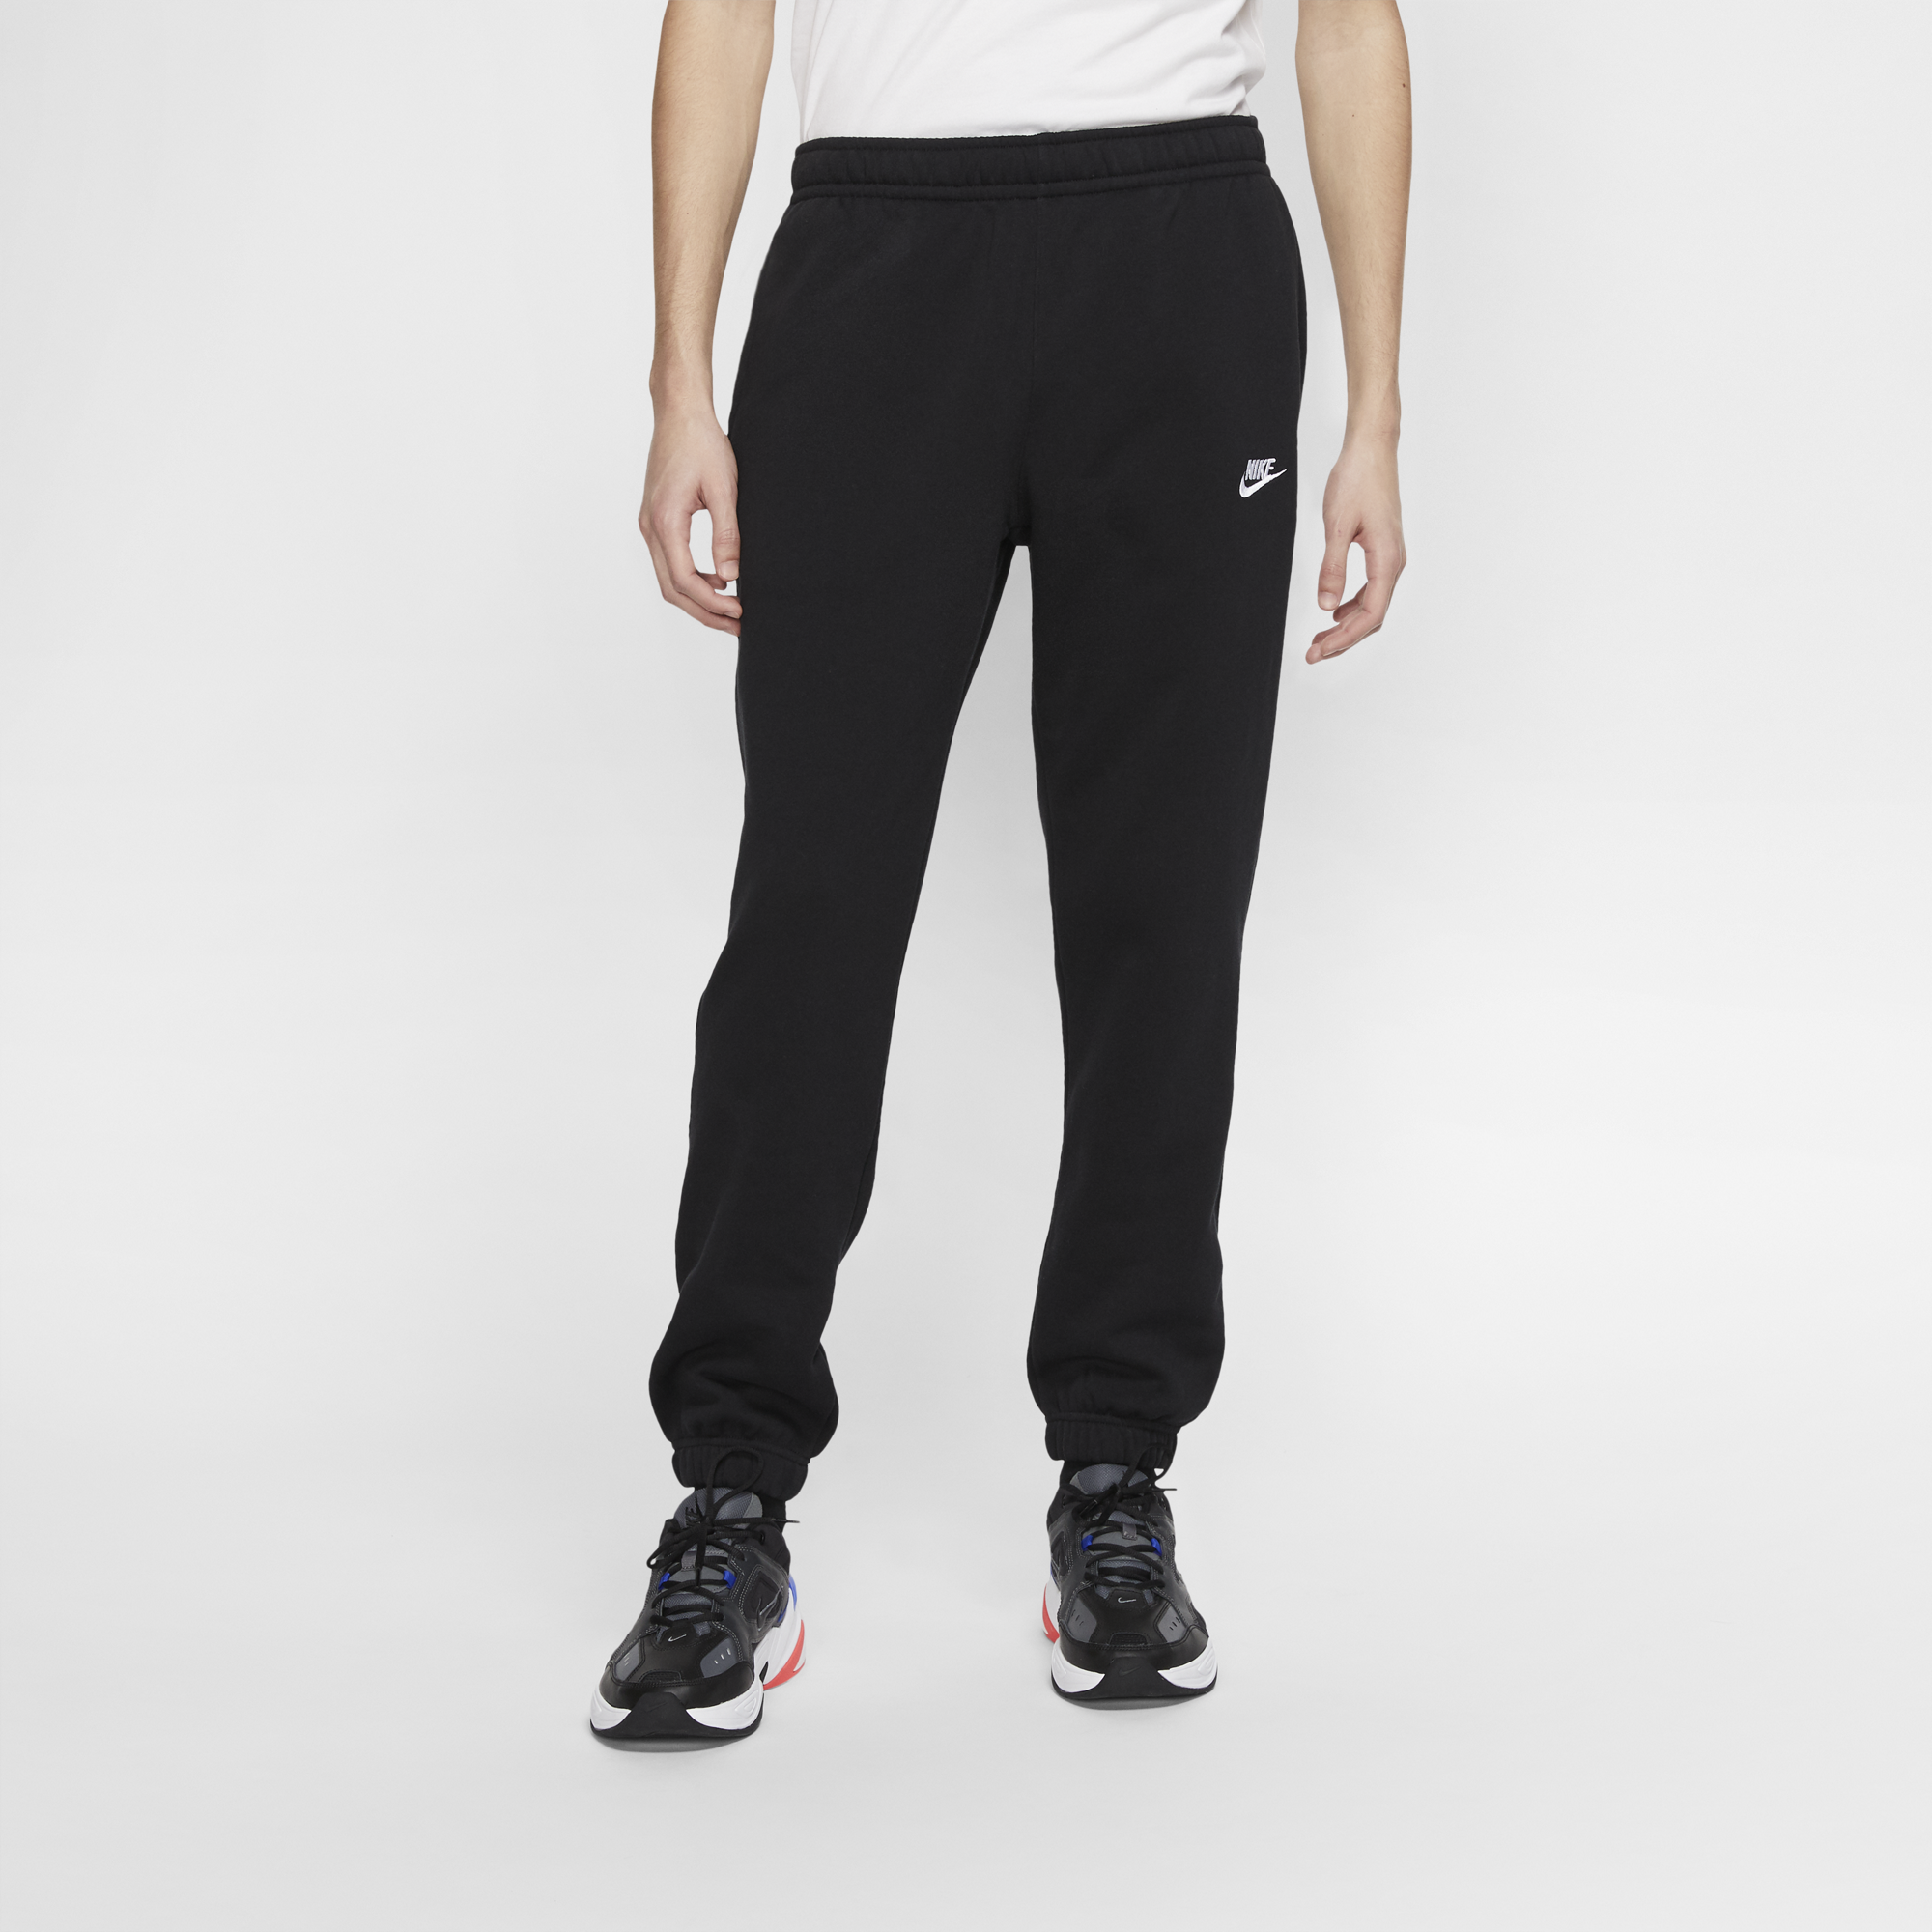 Nike Sportswear Club Fleece mens pants  Mens pants, Nike sportswear,  Sportswear